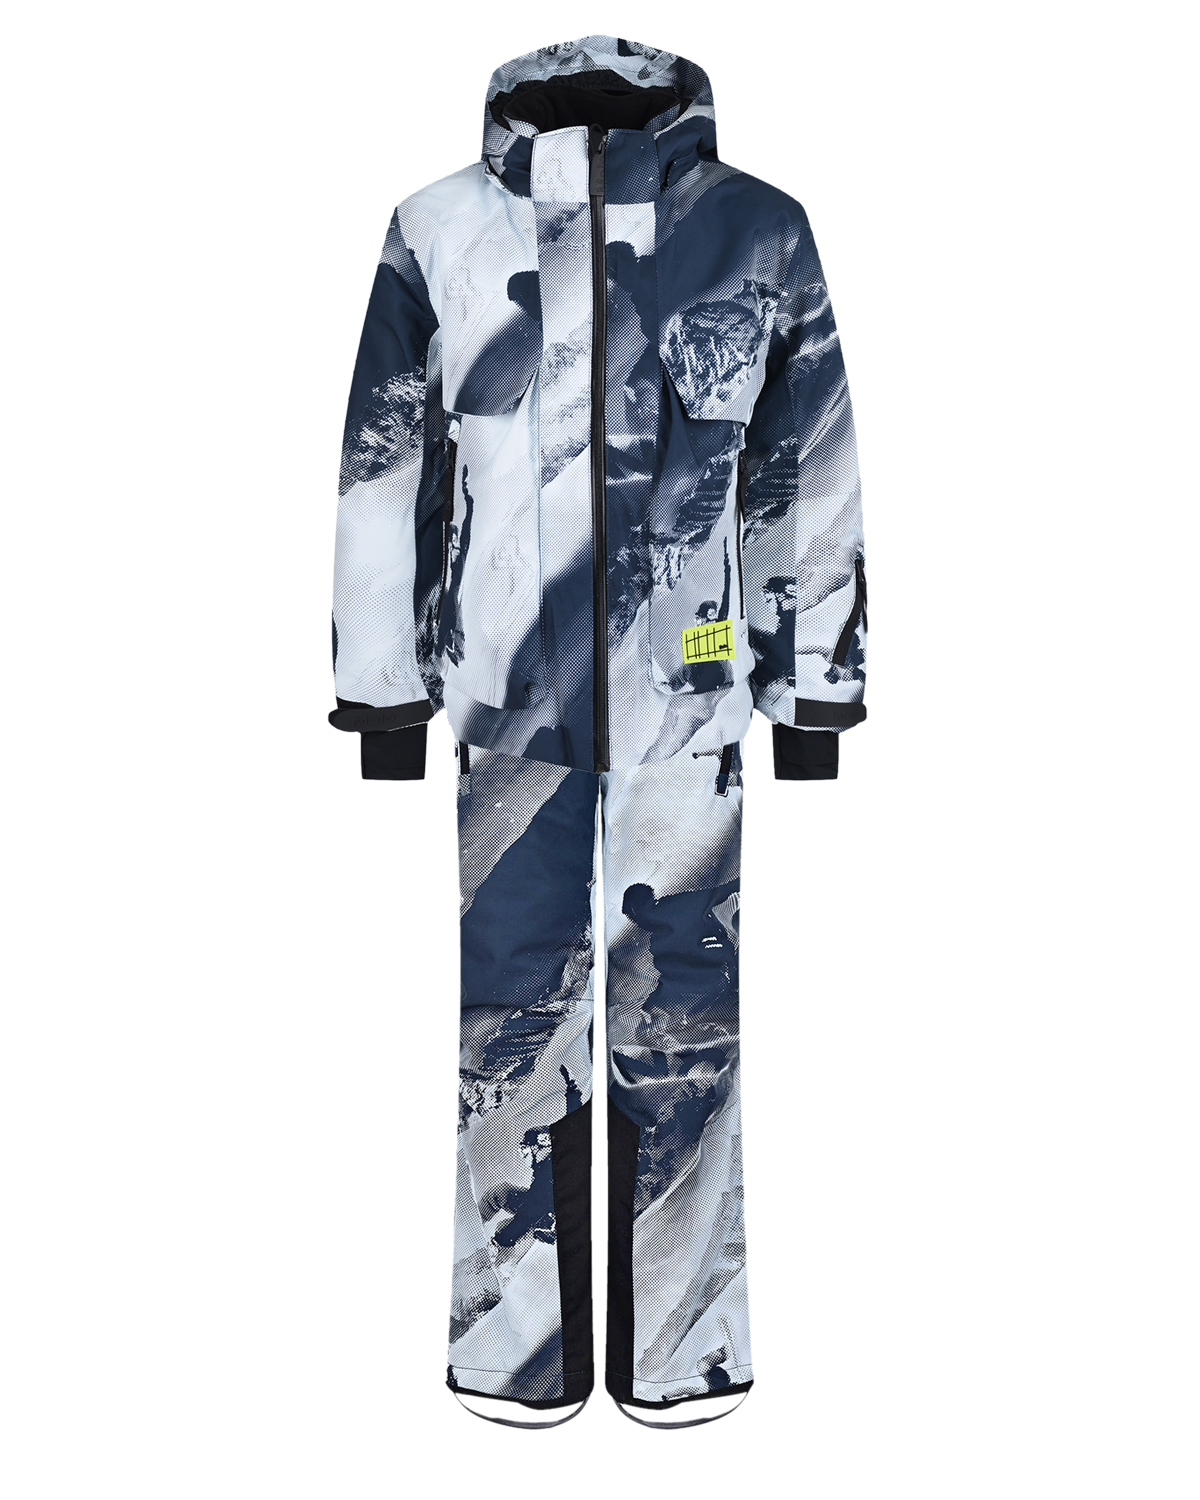 Комплект с принтом "лыжники" (куртка, брюки, подтяжки) Molo детский